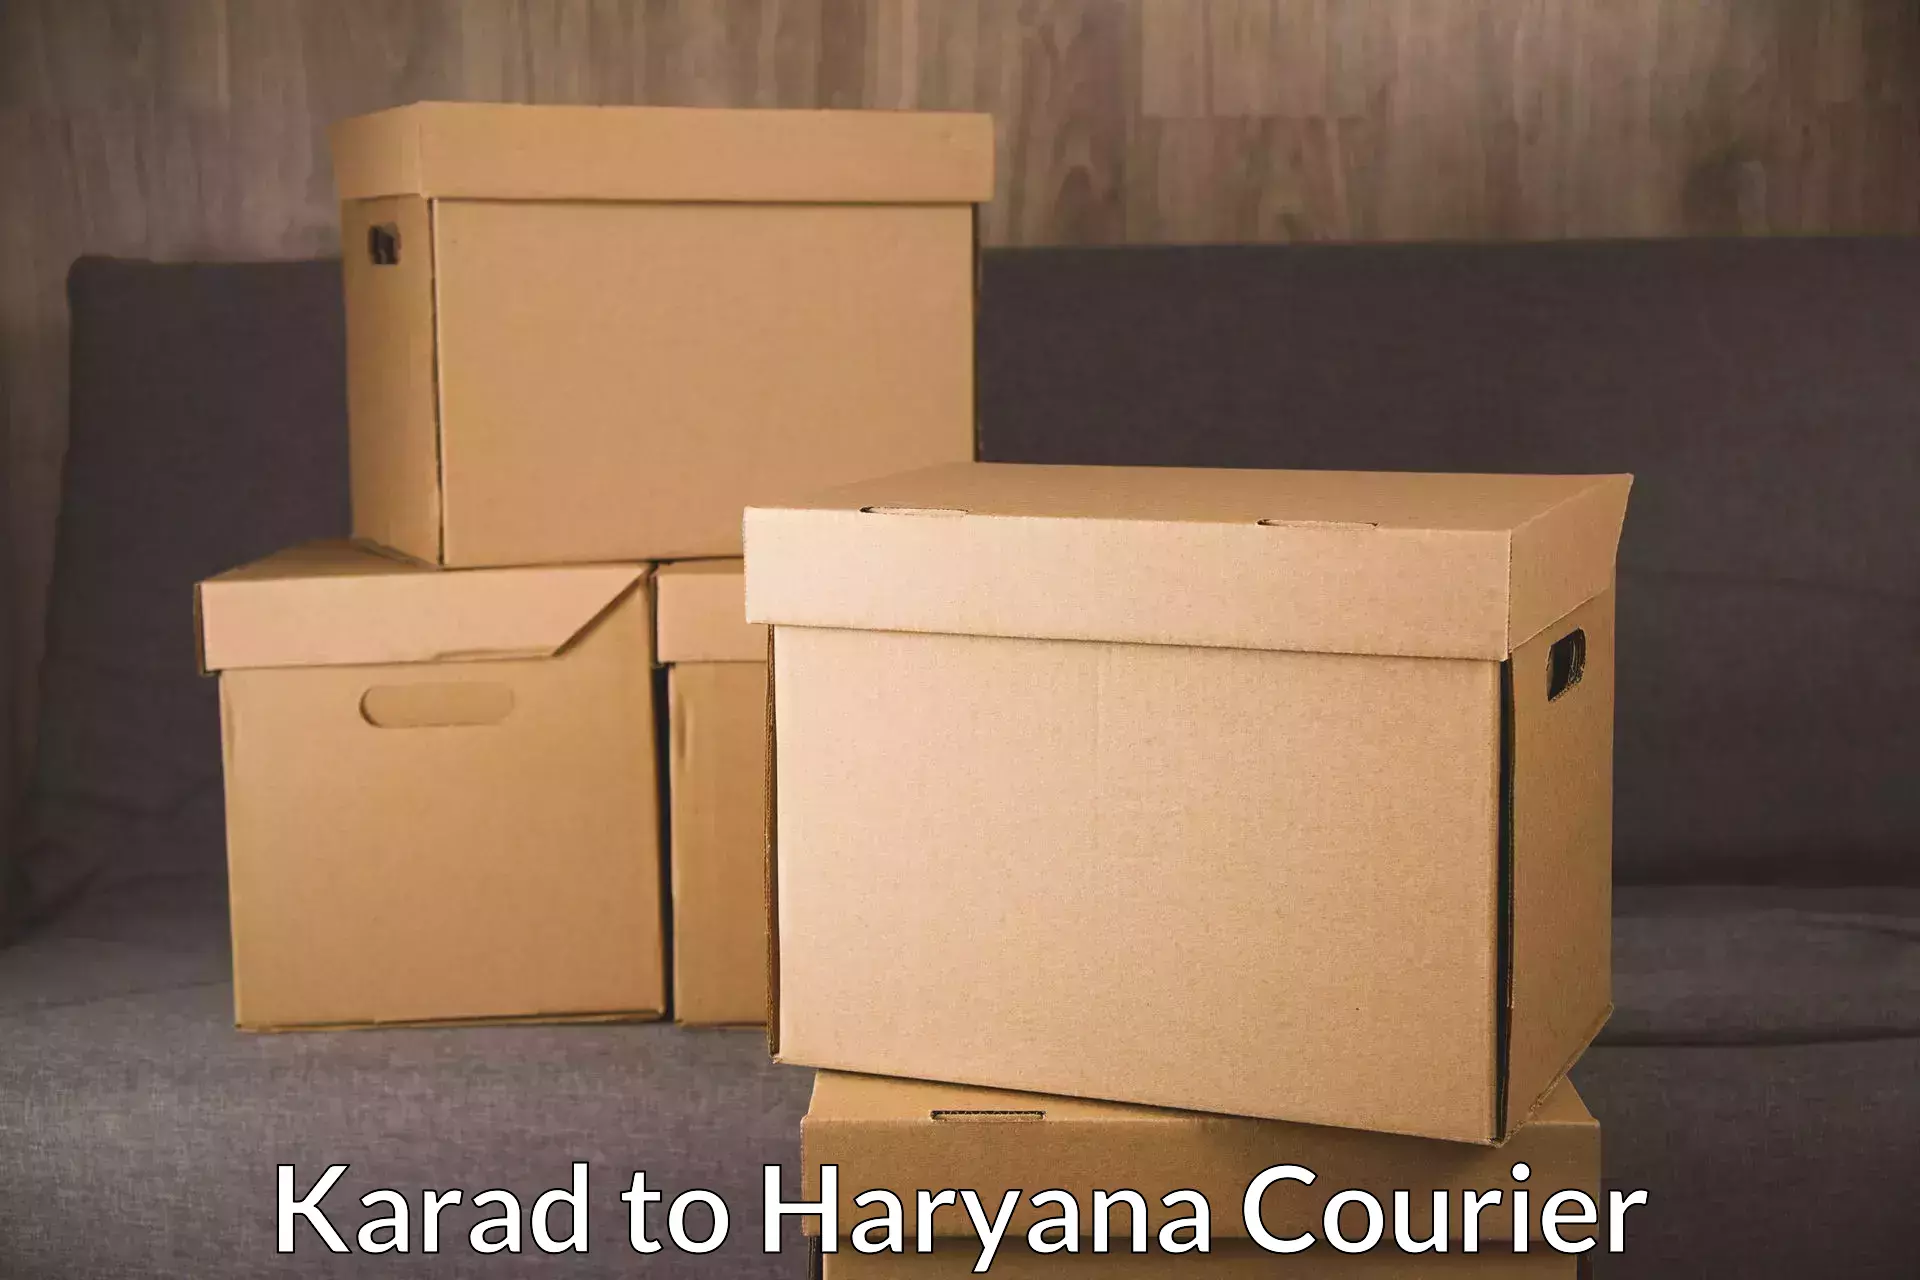 Seamless shipping experience Karad to Charkhari